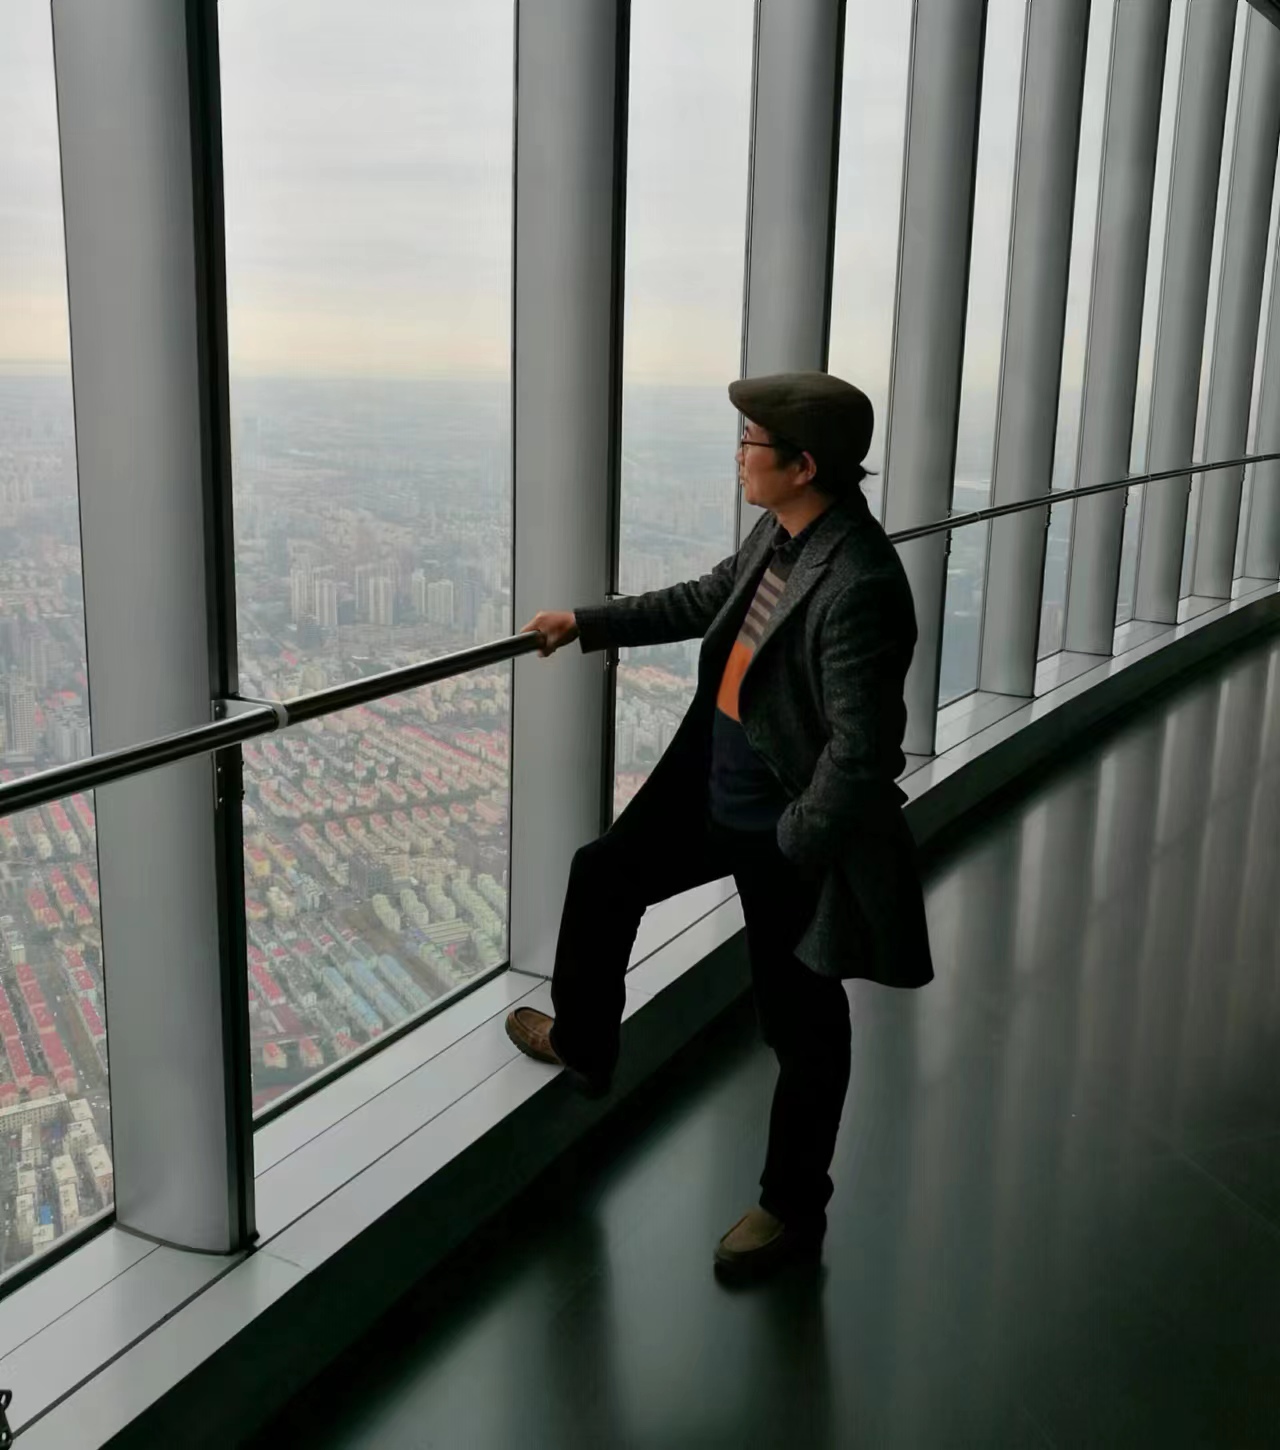 2017年上海中心大厦顶层留影，当年作品入选在上海中心大厦举办的“第四届”左西右东“中美当代优秀艺术作品大展。